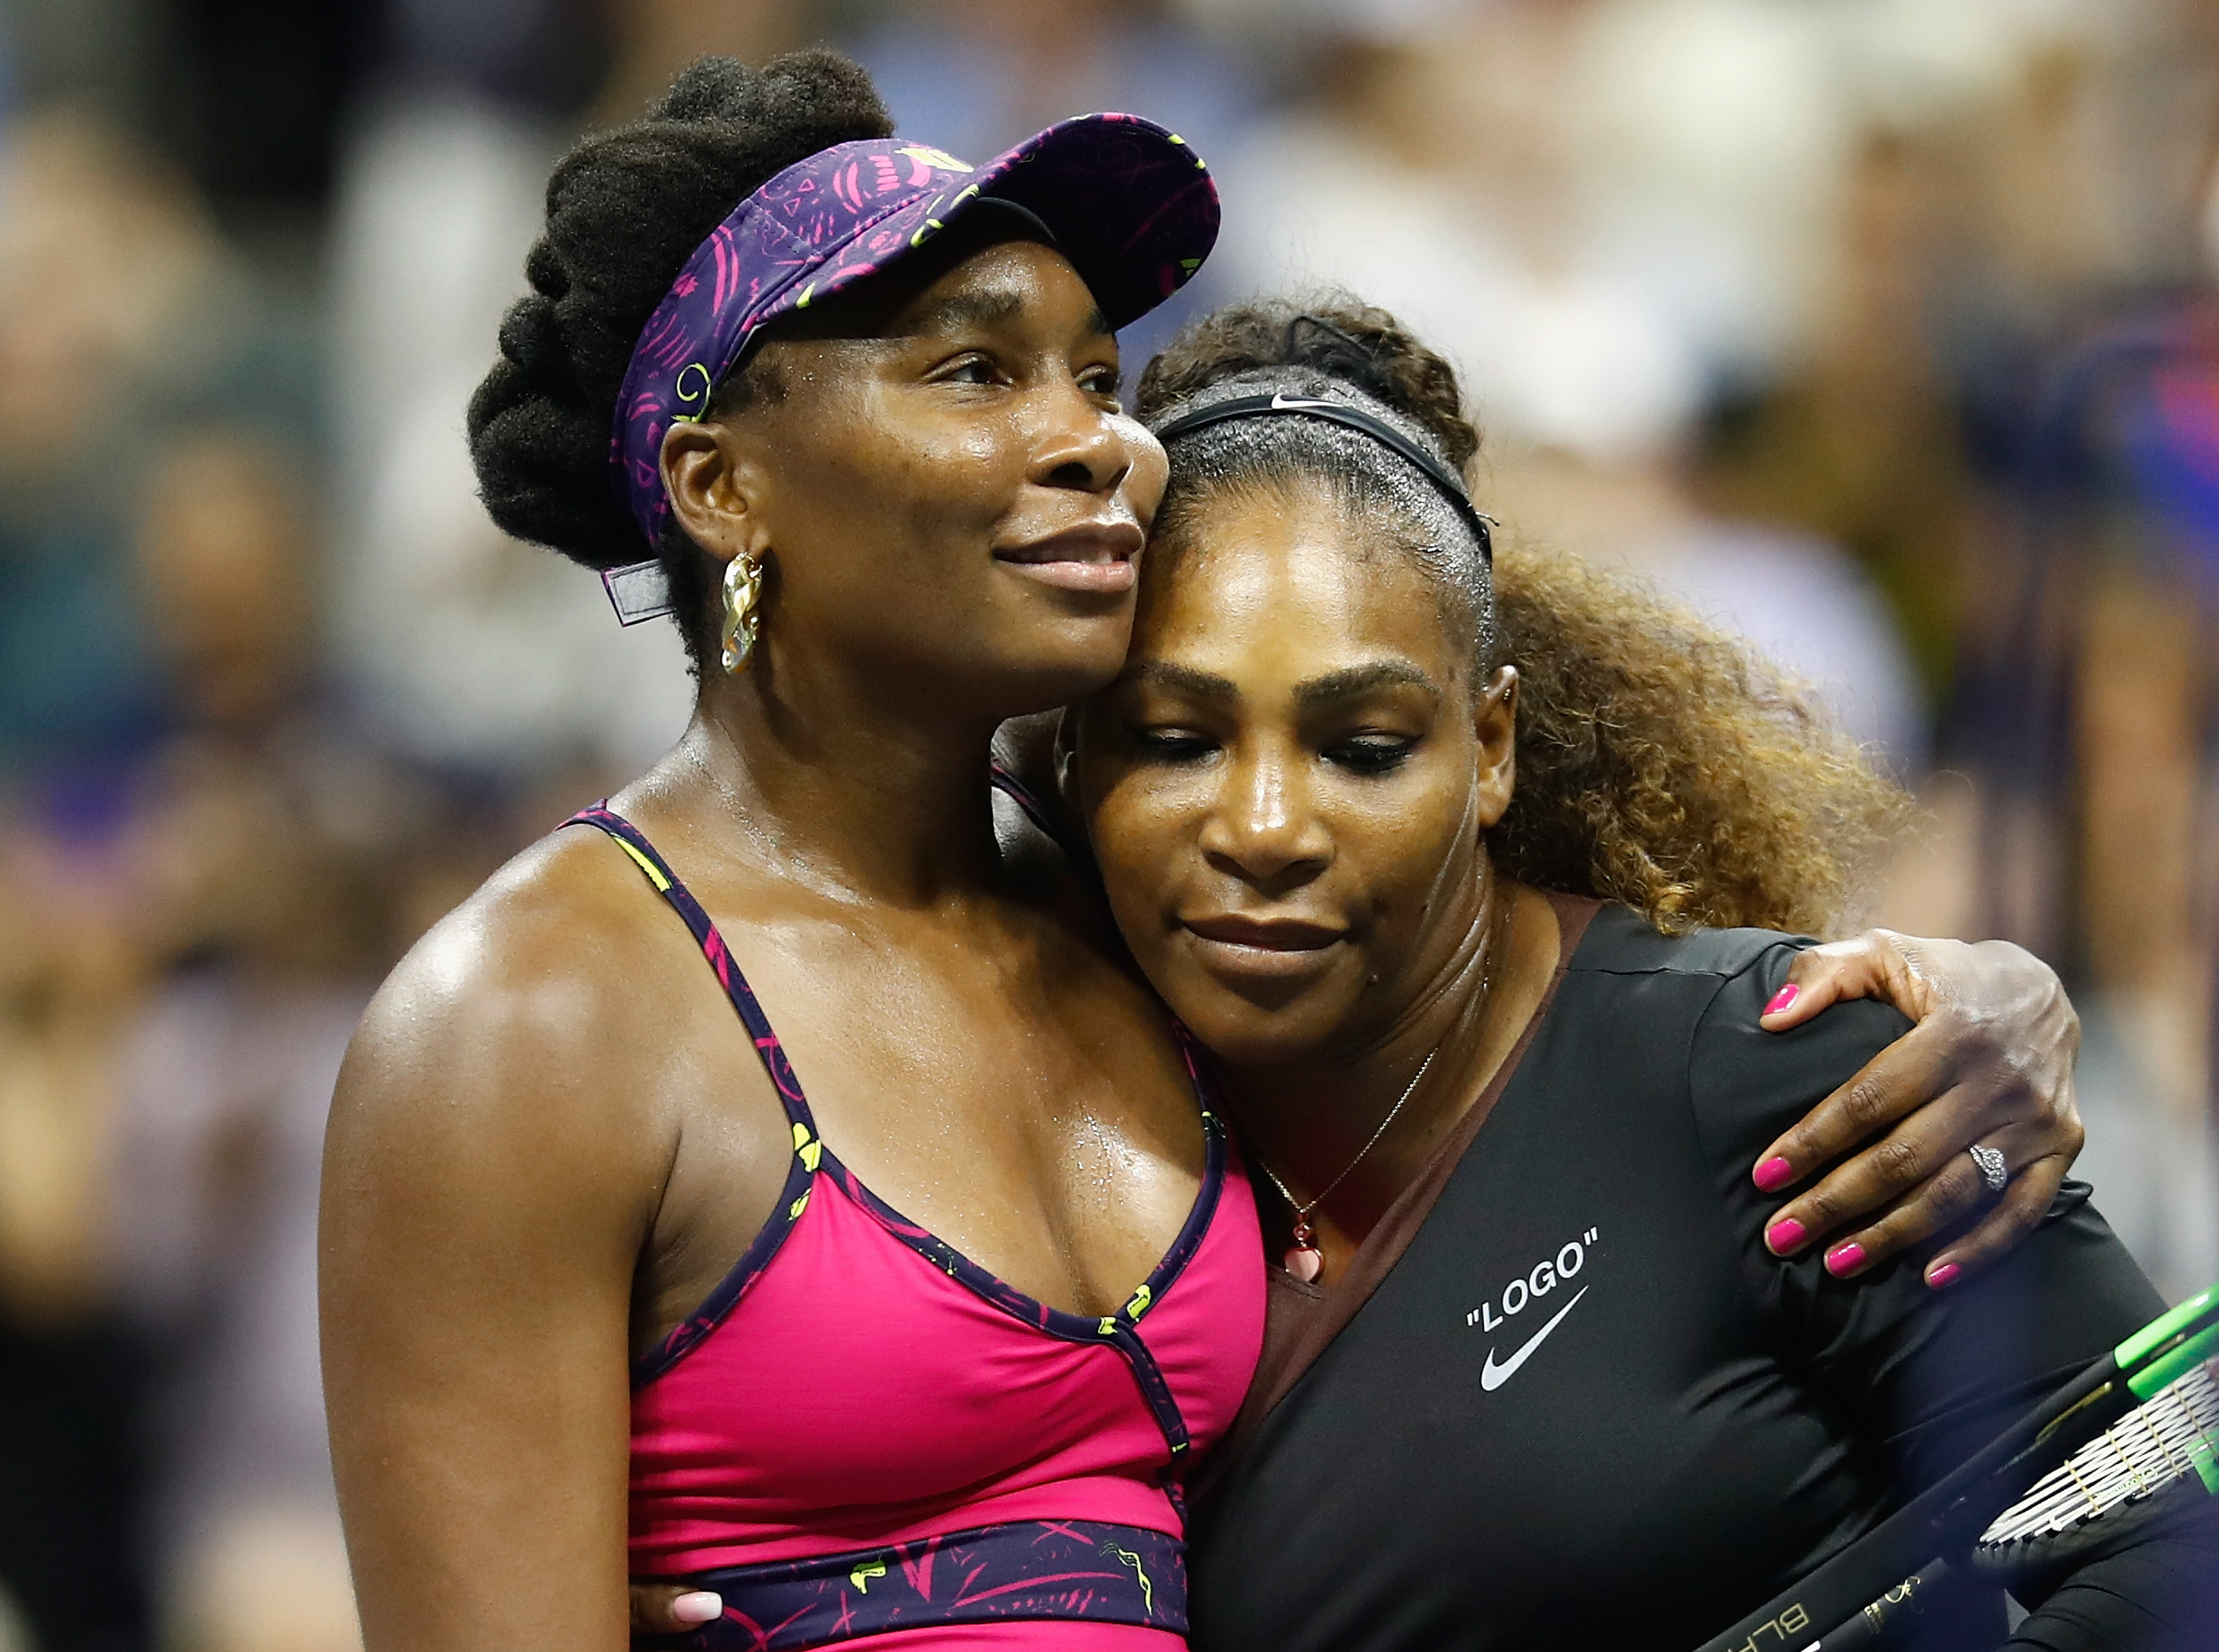 Serena Williams și Venus Williams pe terenul de tenis, îmbrățișate